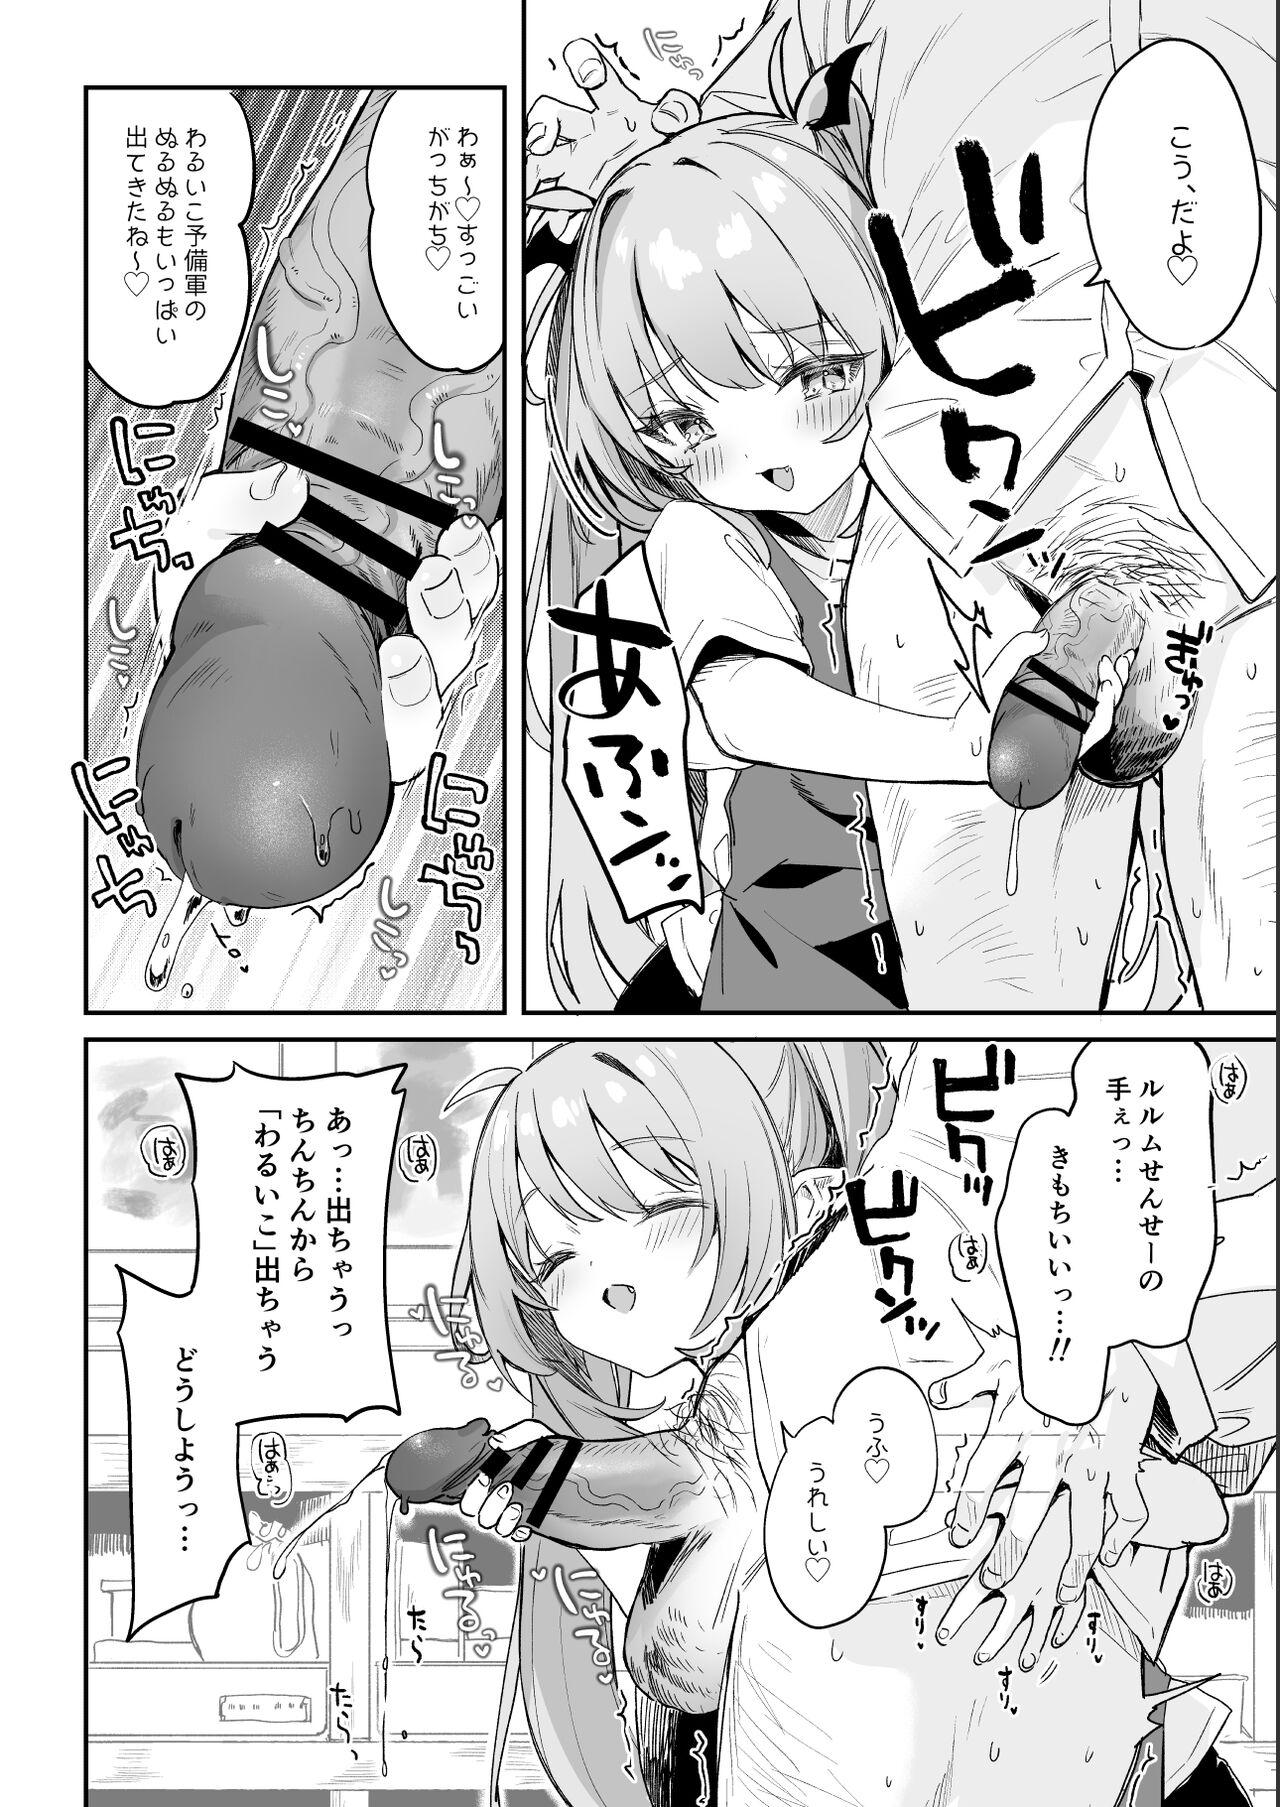 Star [Tamano Kedama] Kodomo no Hi (Imishin) ni Mukete Manga o Kaku - Original Twinks - Page 8